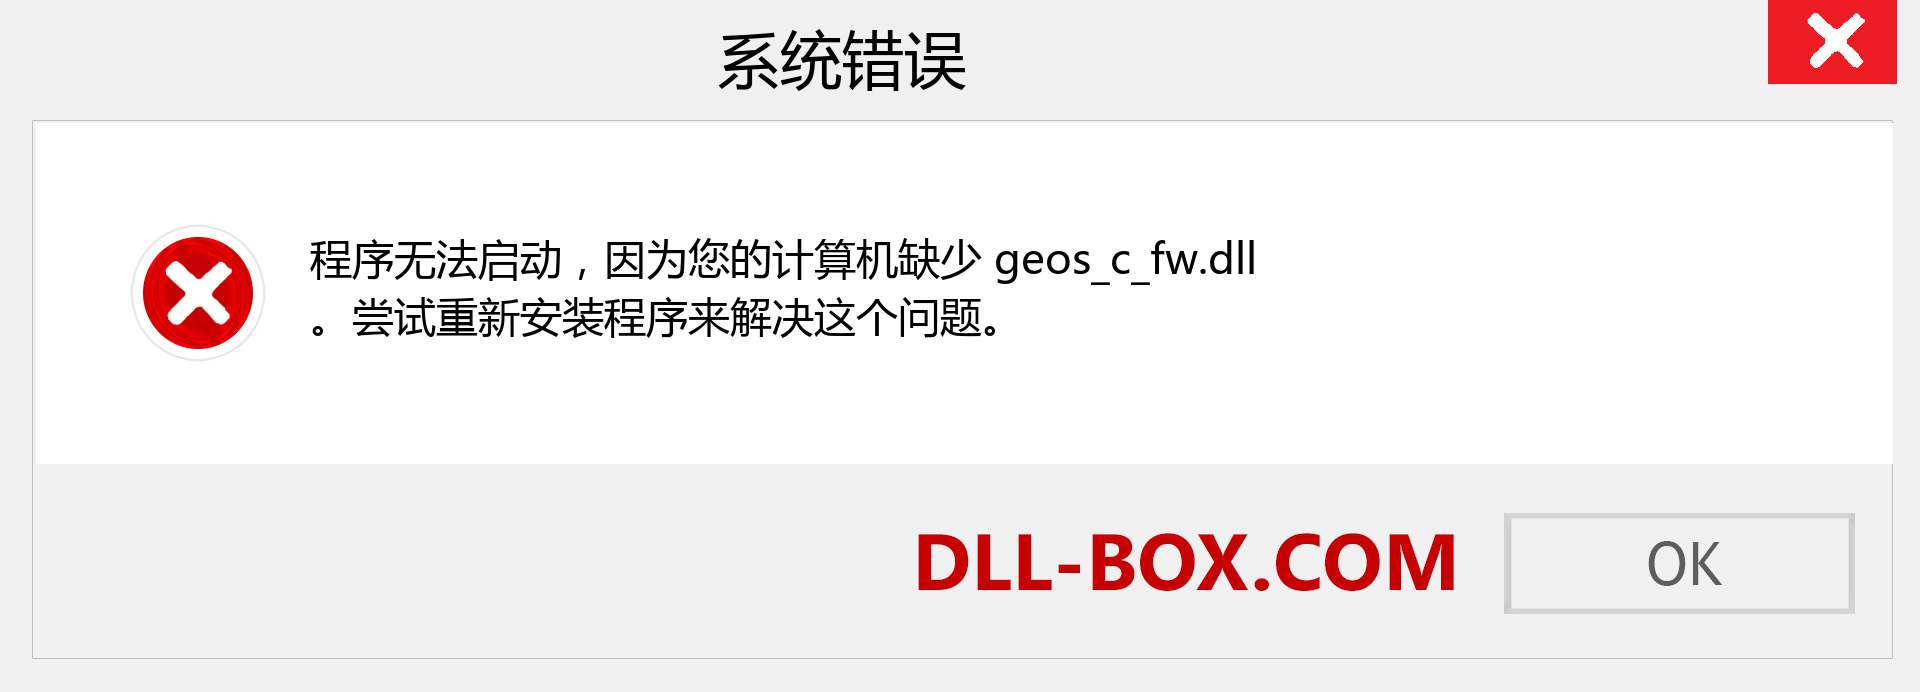 geos_c_fw.dll 文件丢失？。 适用于 Windows 7、8、10 的下载 - 修复 Windows、照片、图像上的 geos_c_fw dll 丢失错误